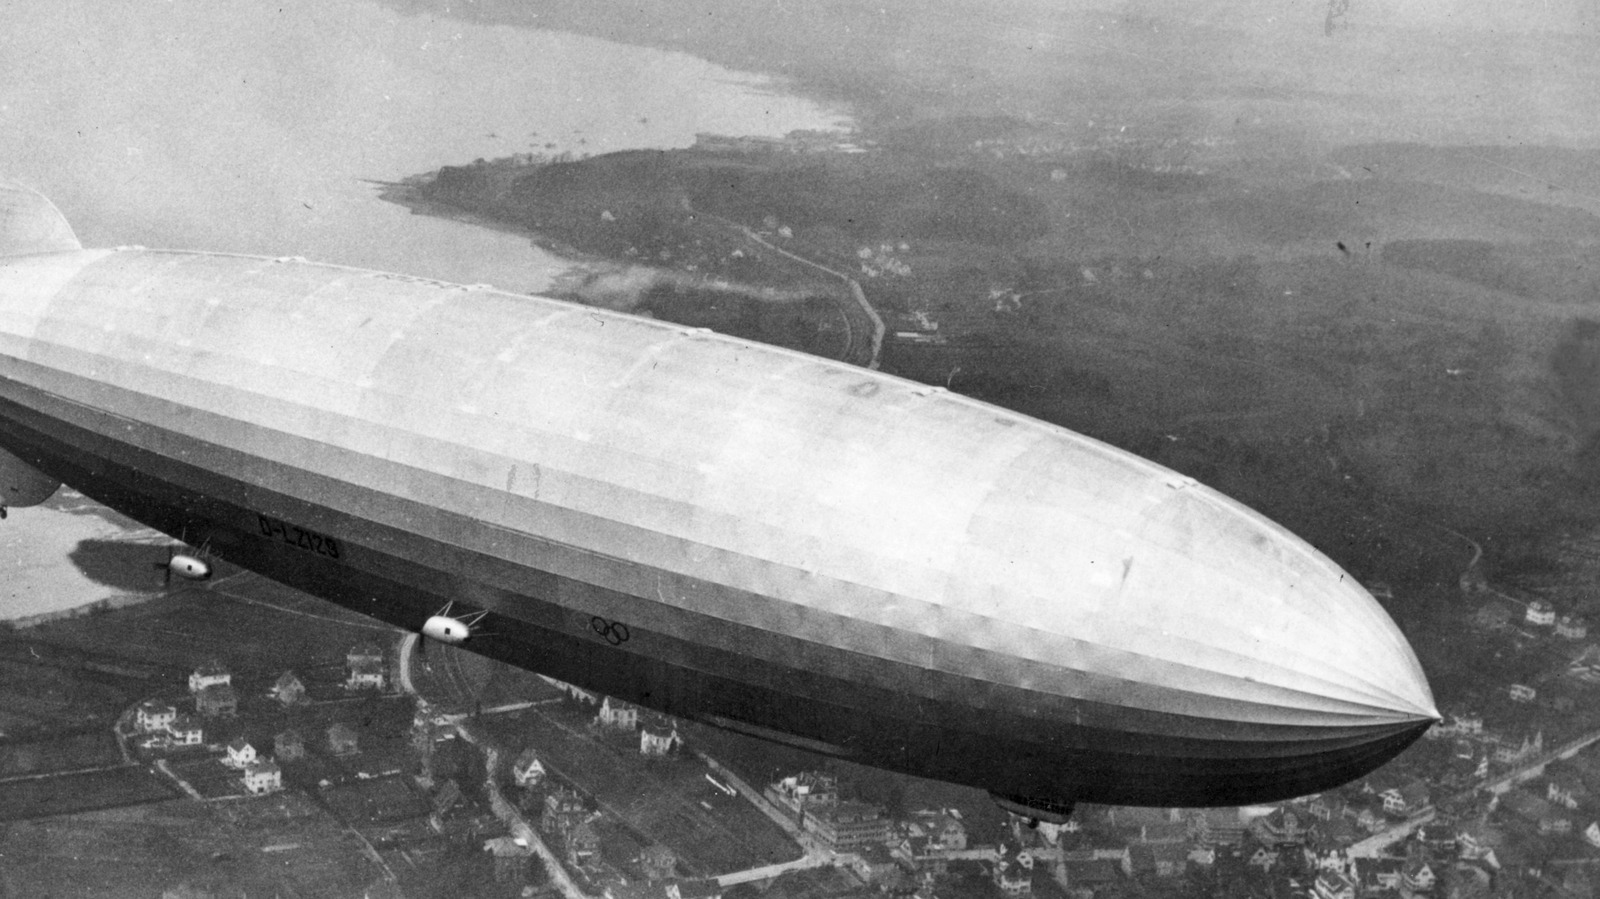 Welche Speisen wurden in der Hindenburg serviert?